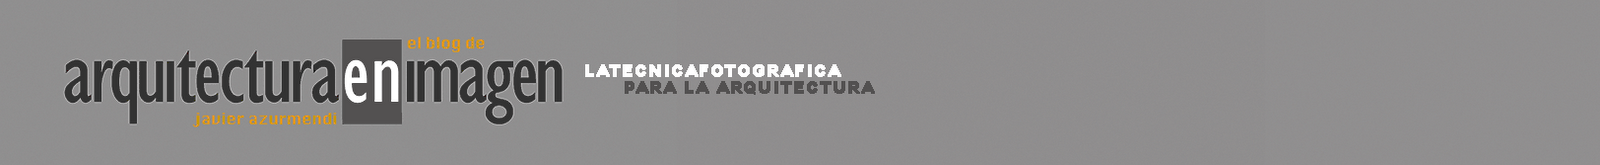 LATECNICAFOTOGRAFICA, para la arquitectura